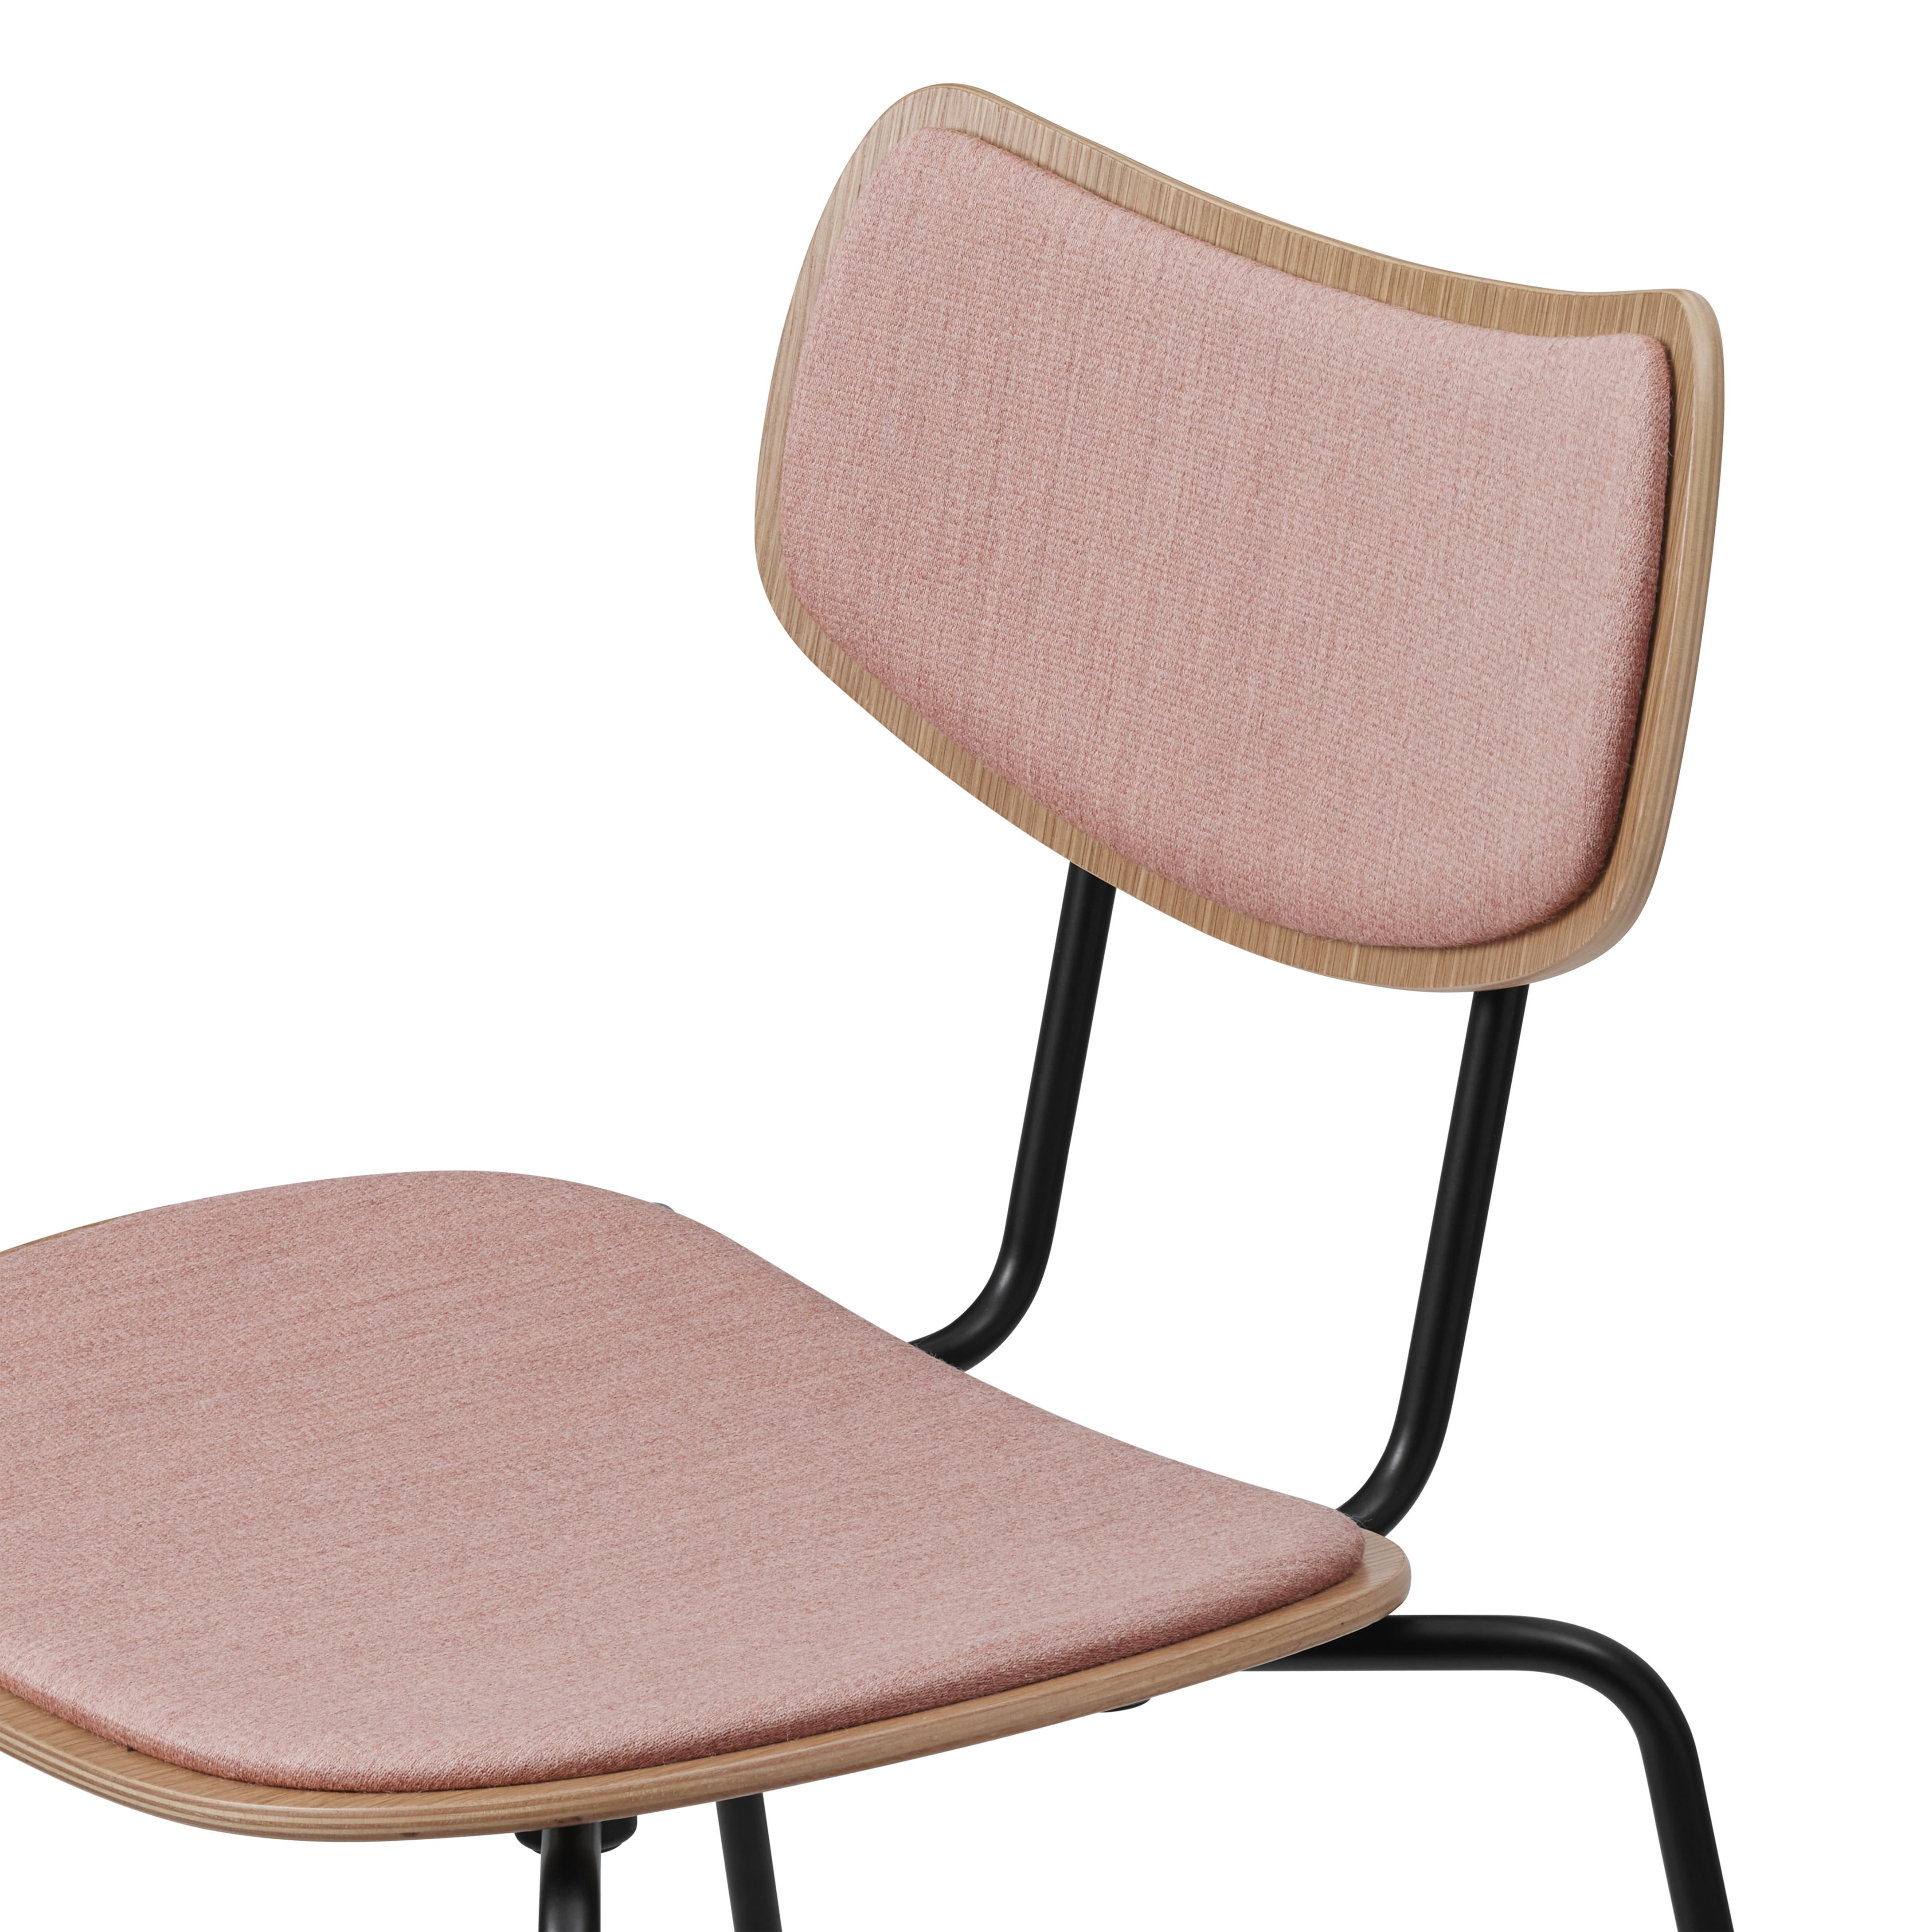 Carl Hansen VLA26P Vega Chair, chêne laqué / Mood 01106